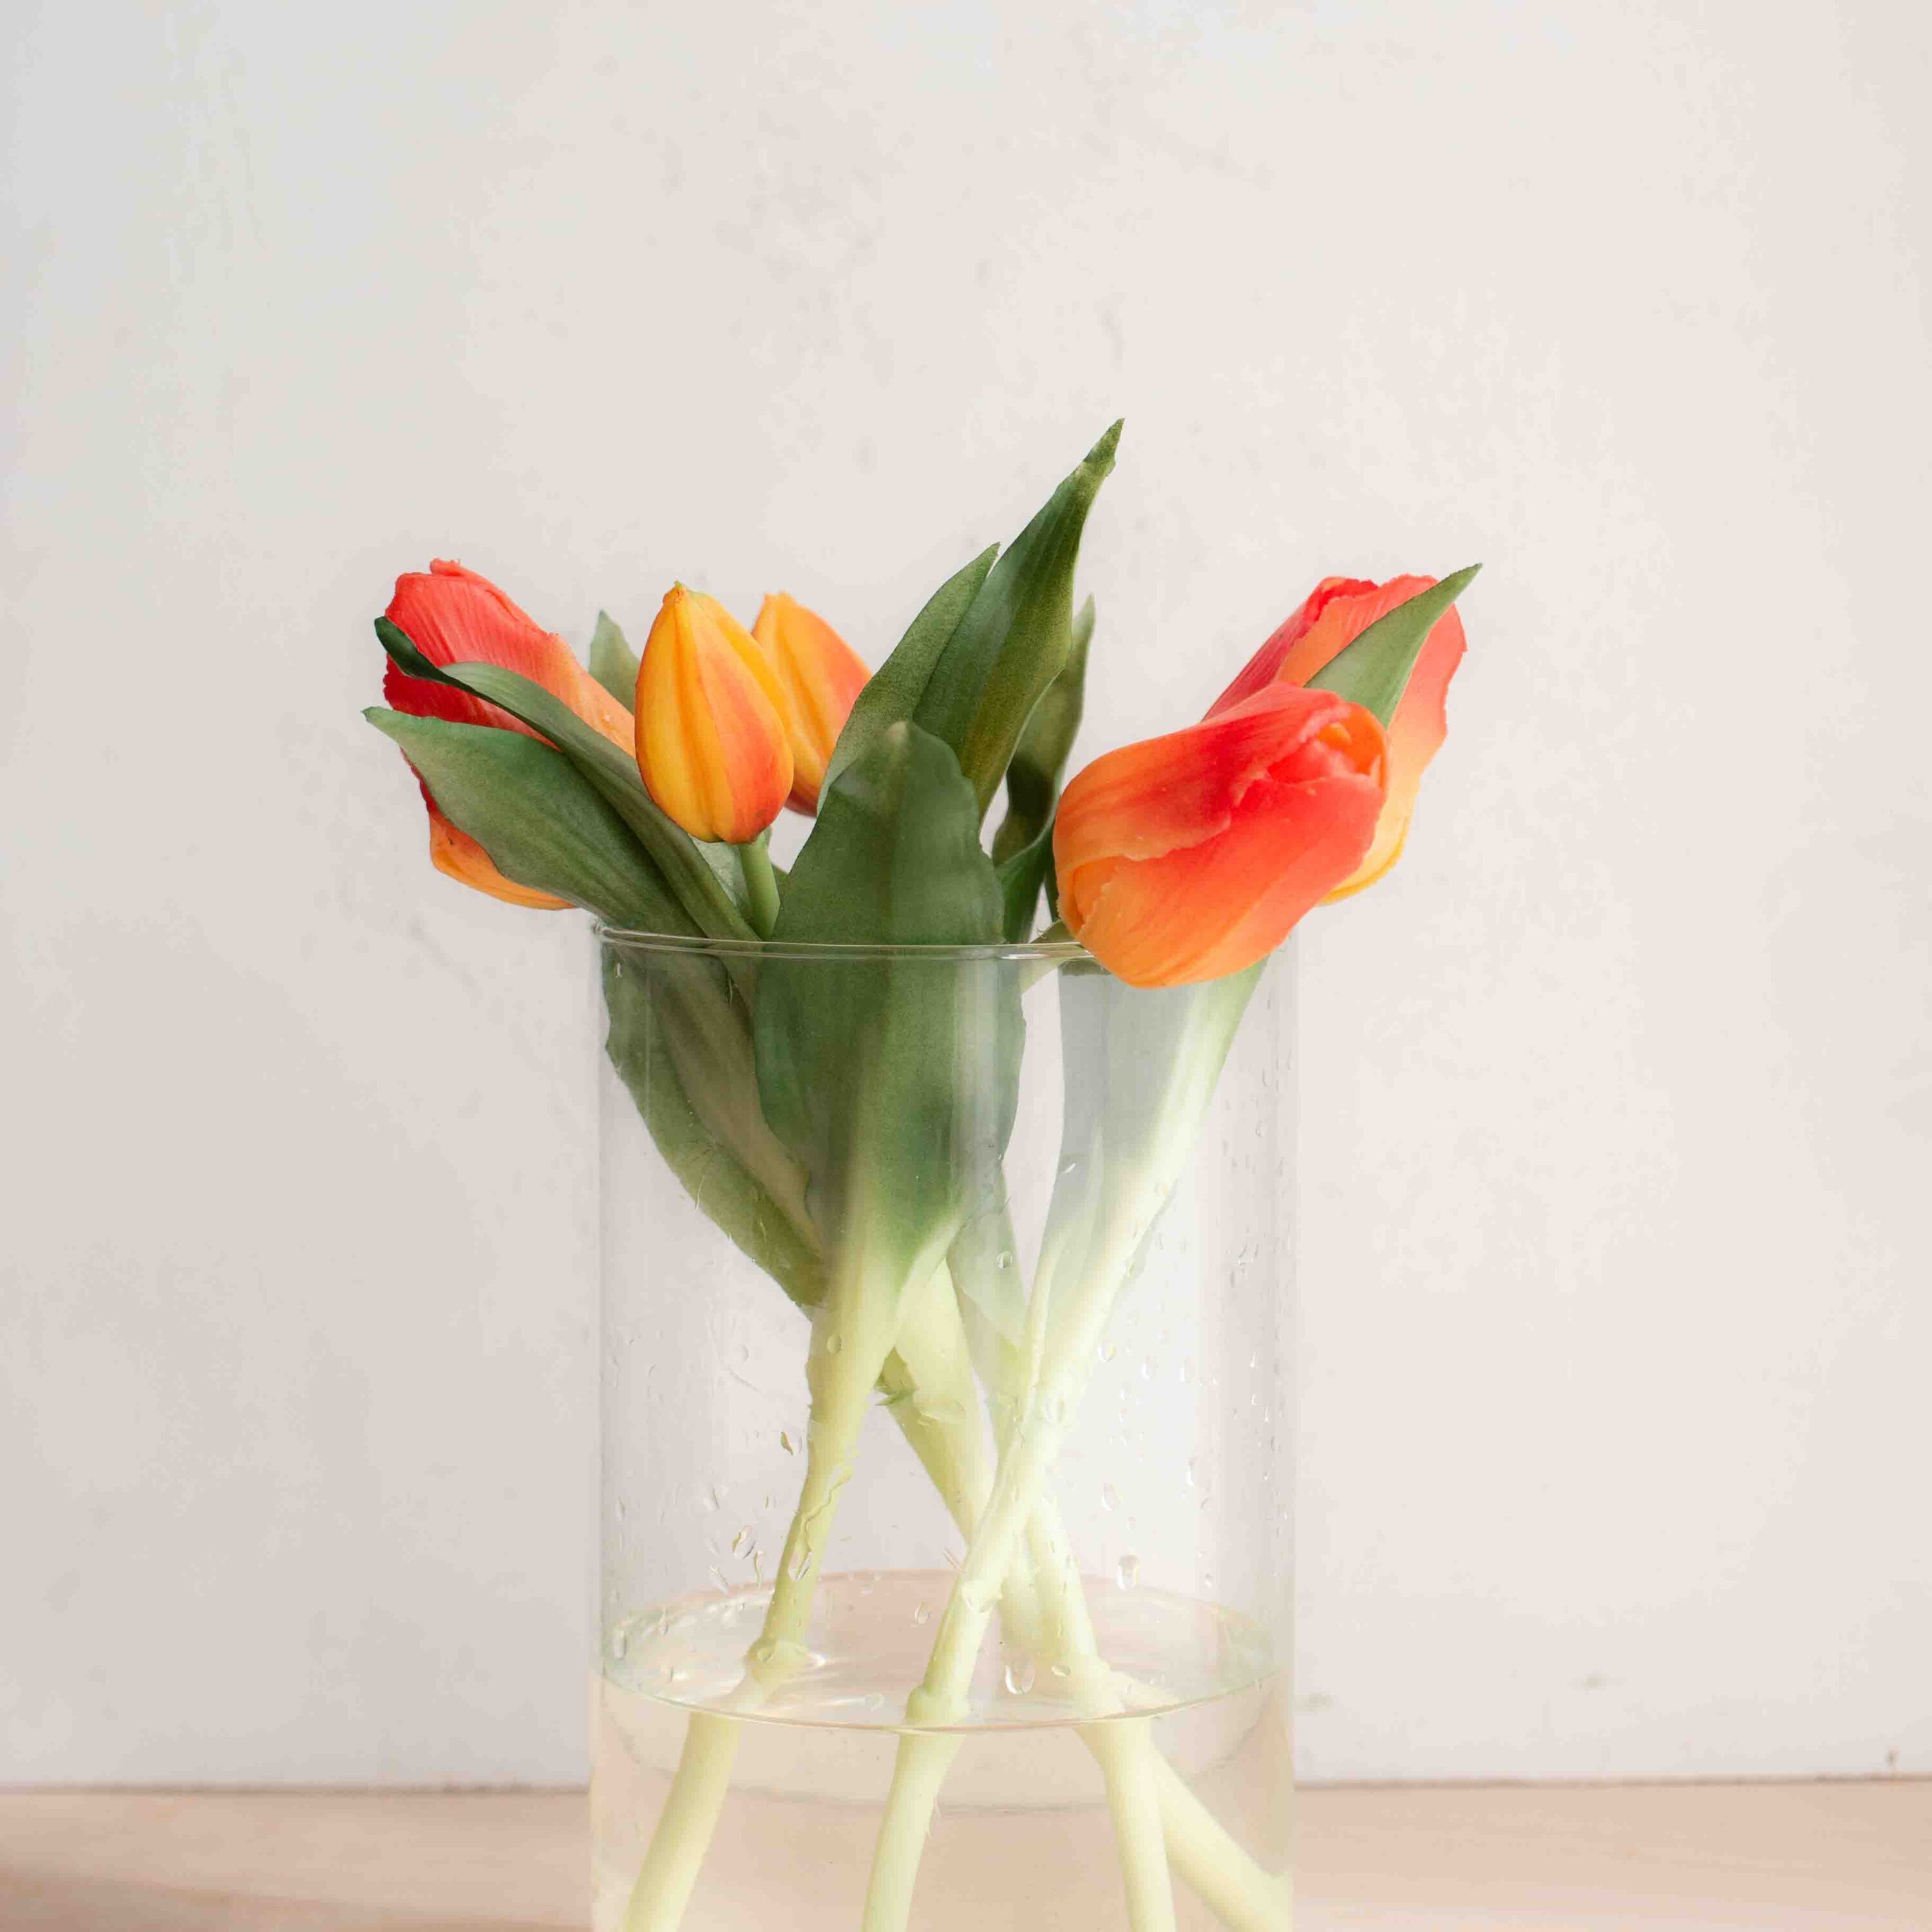 bellissimi tulipani real touch, estremamente realistici colore arancione